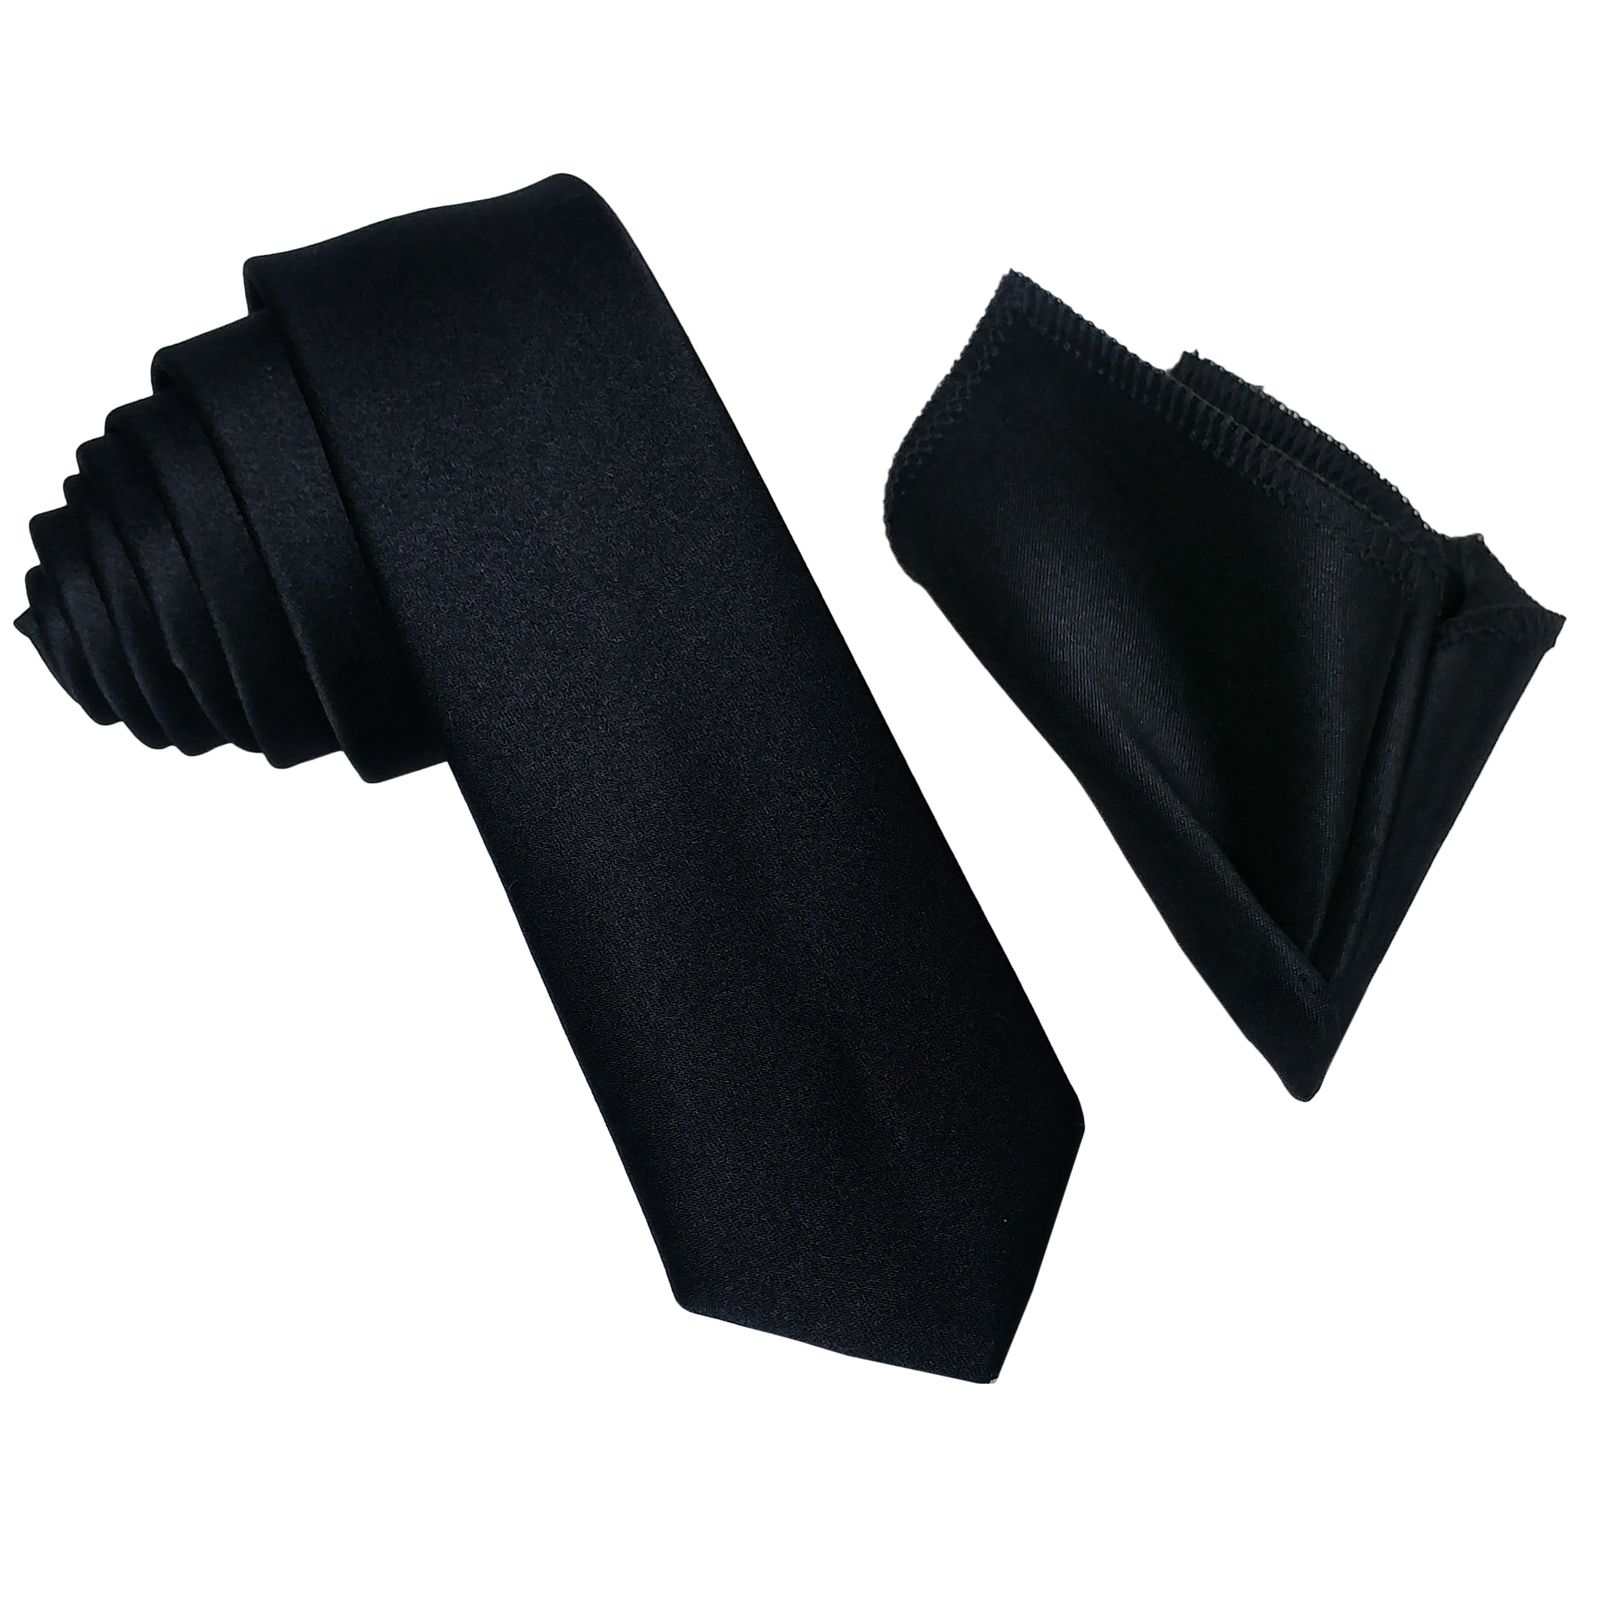 ست کراوات و دستمال جیب مردانه مدل b1 -  - 1